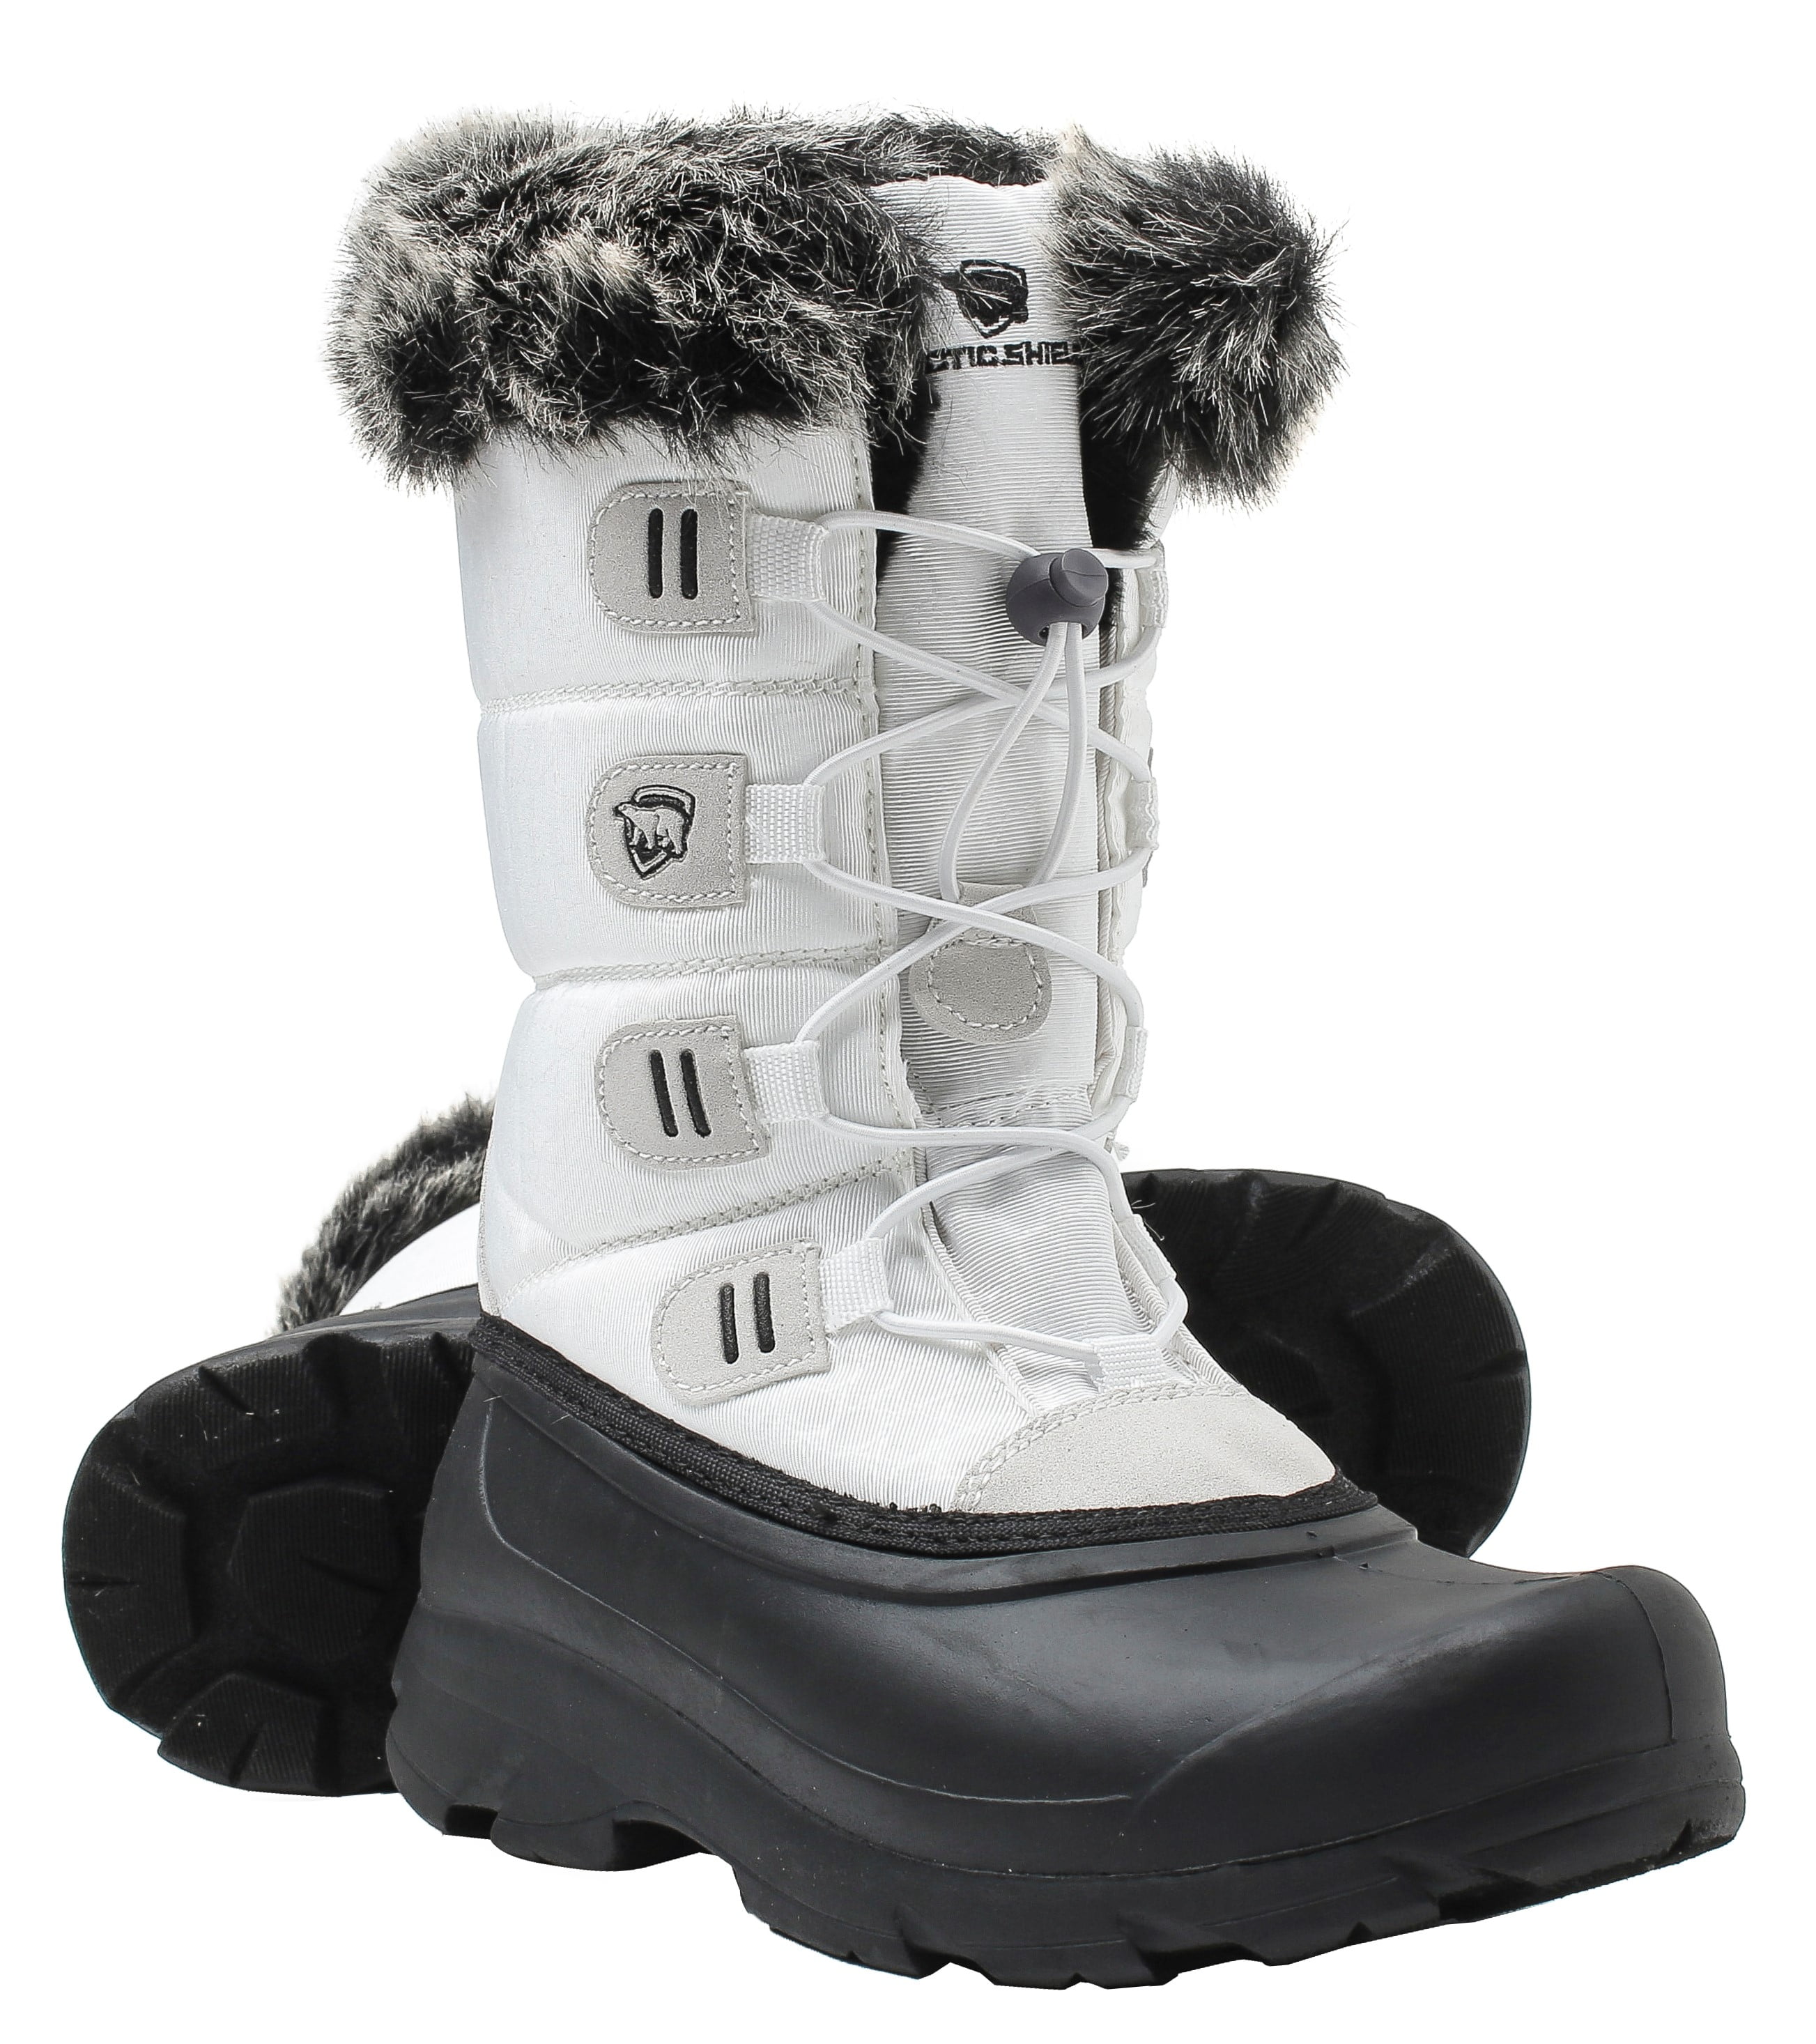 women's winter boots at walmart